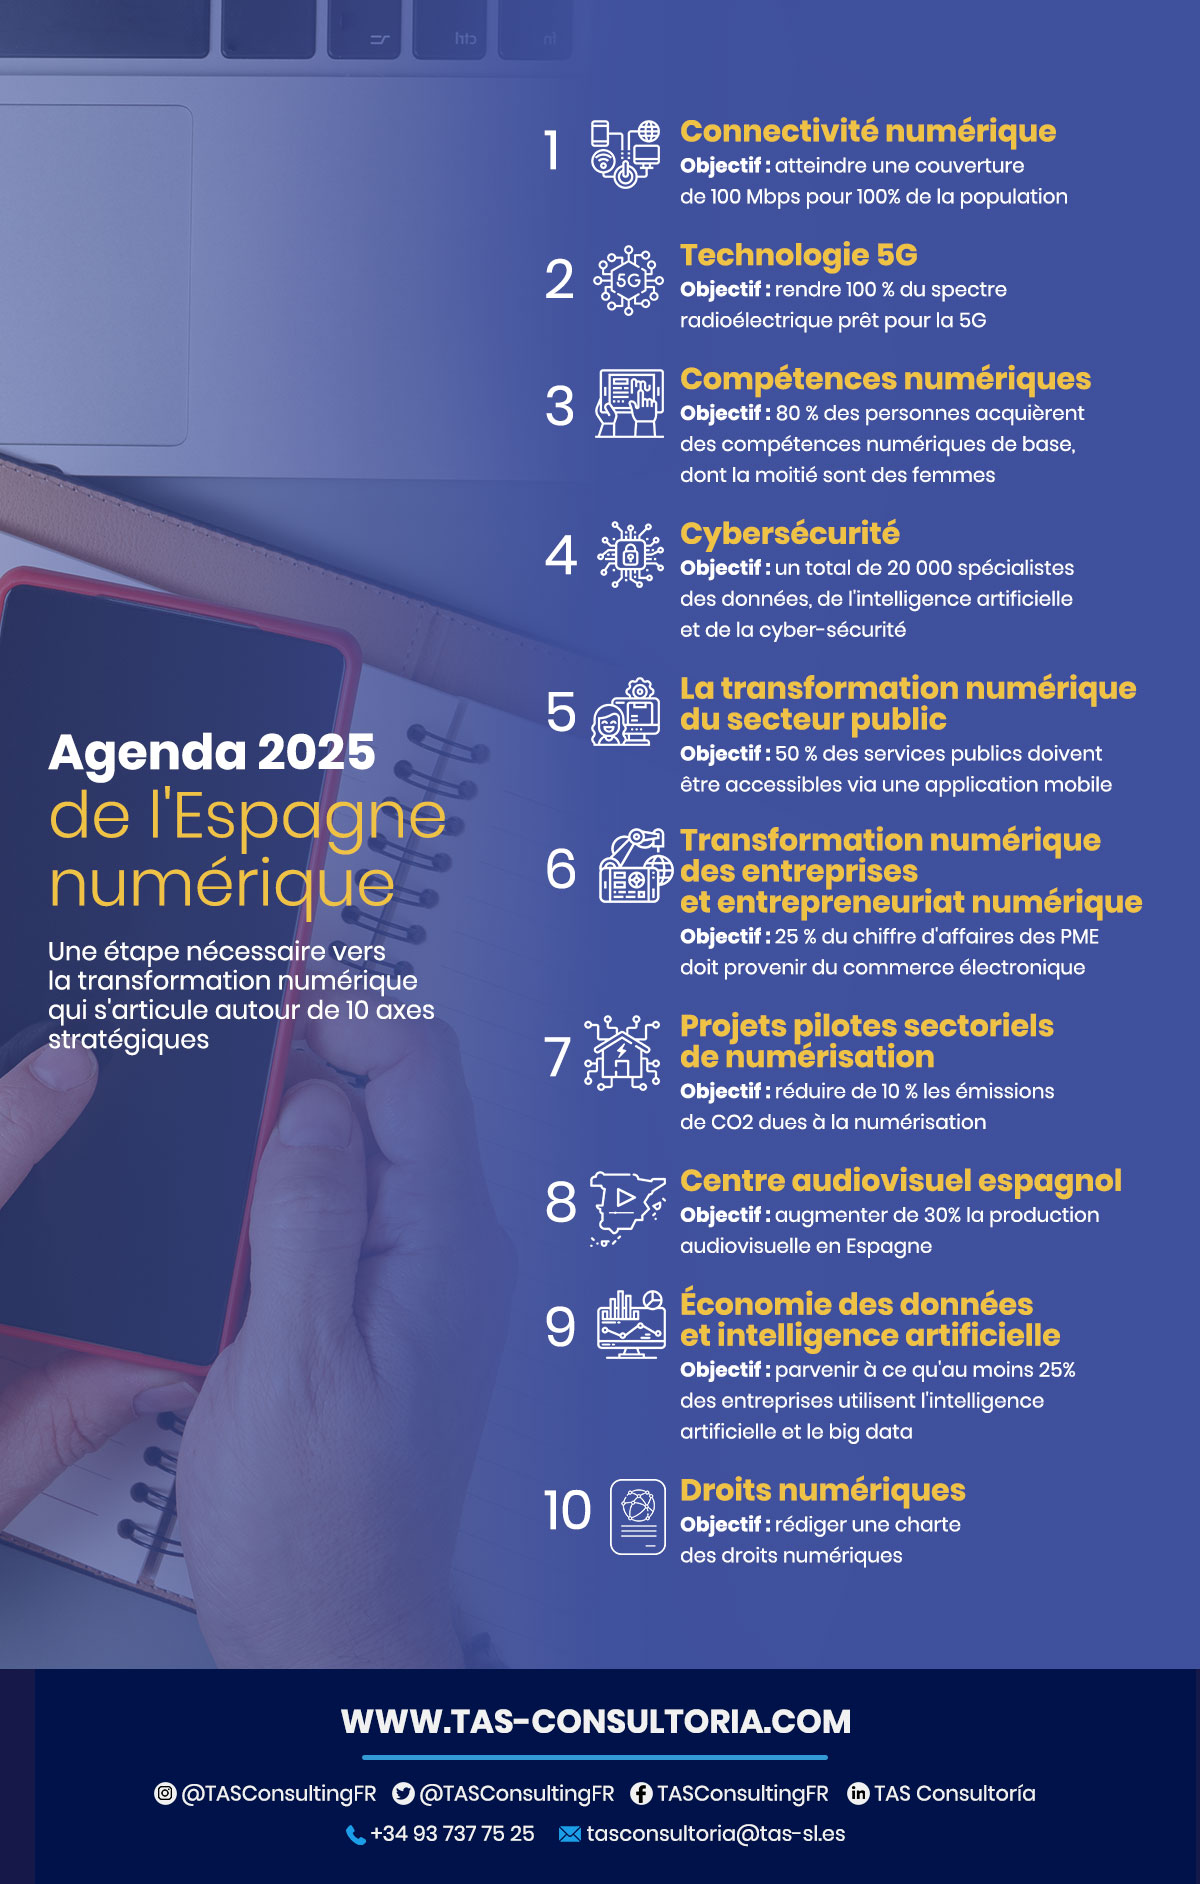 Agenda 2025 pour l'Espagne numérique